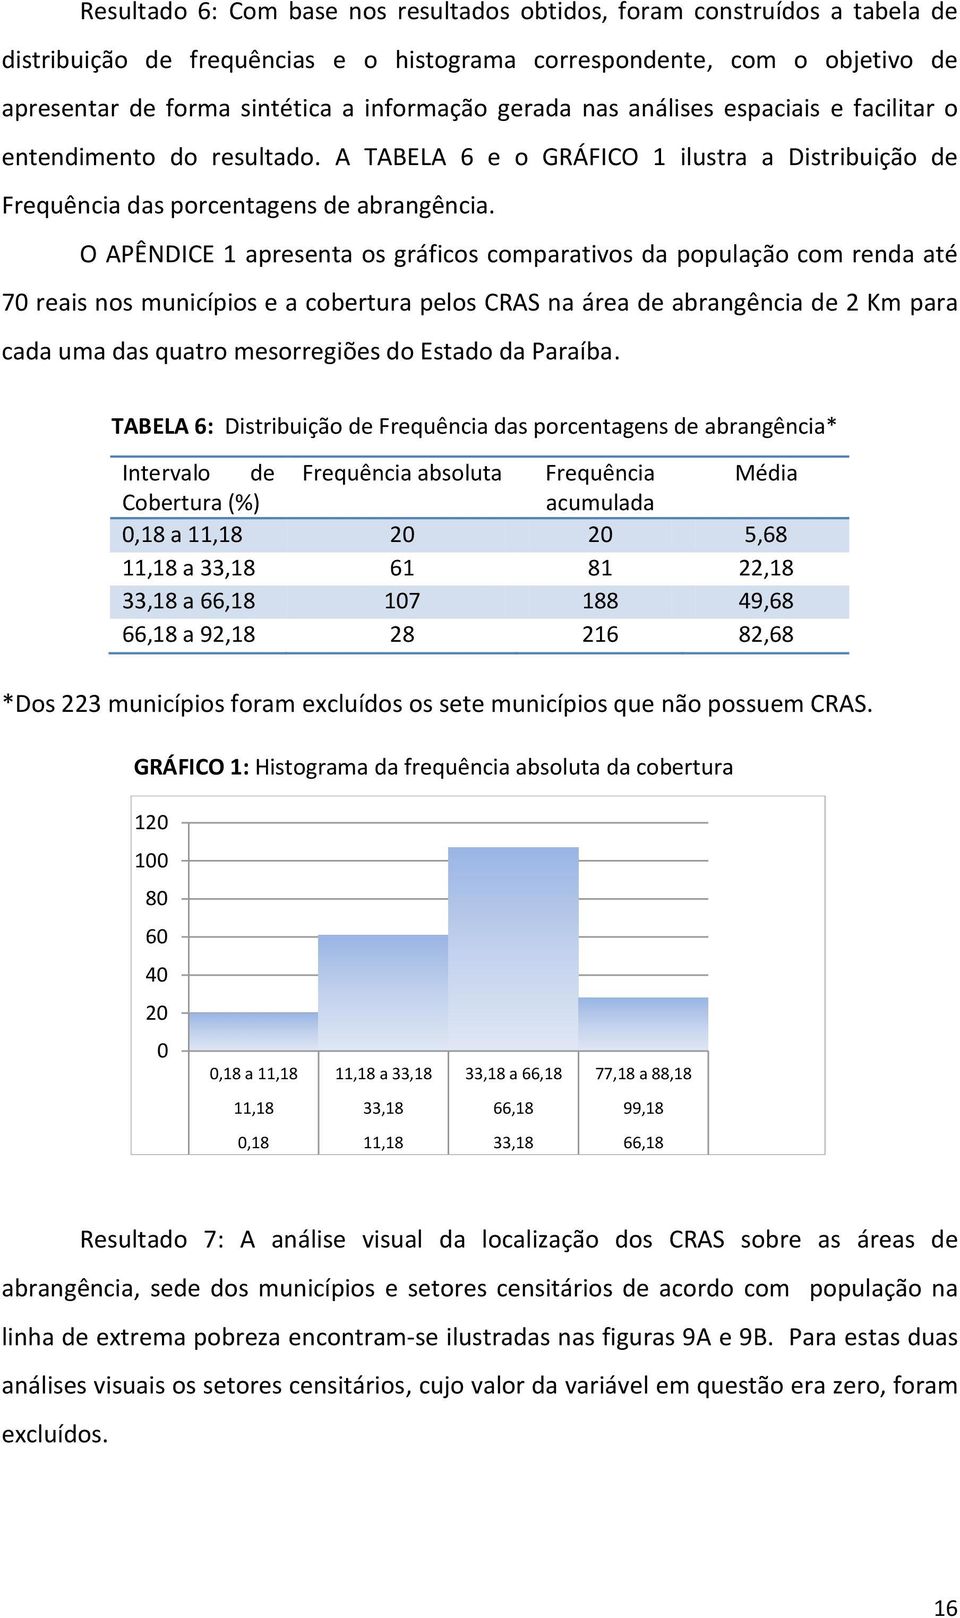 O APÊNDICE 1 apresenta os gráficos comparativos da população com renda até 70 reais nos municípios e a cobertura pelos CRAS na área de abrangência de 2 Km para cada uma das quatro mesorregiões do